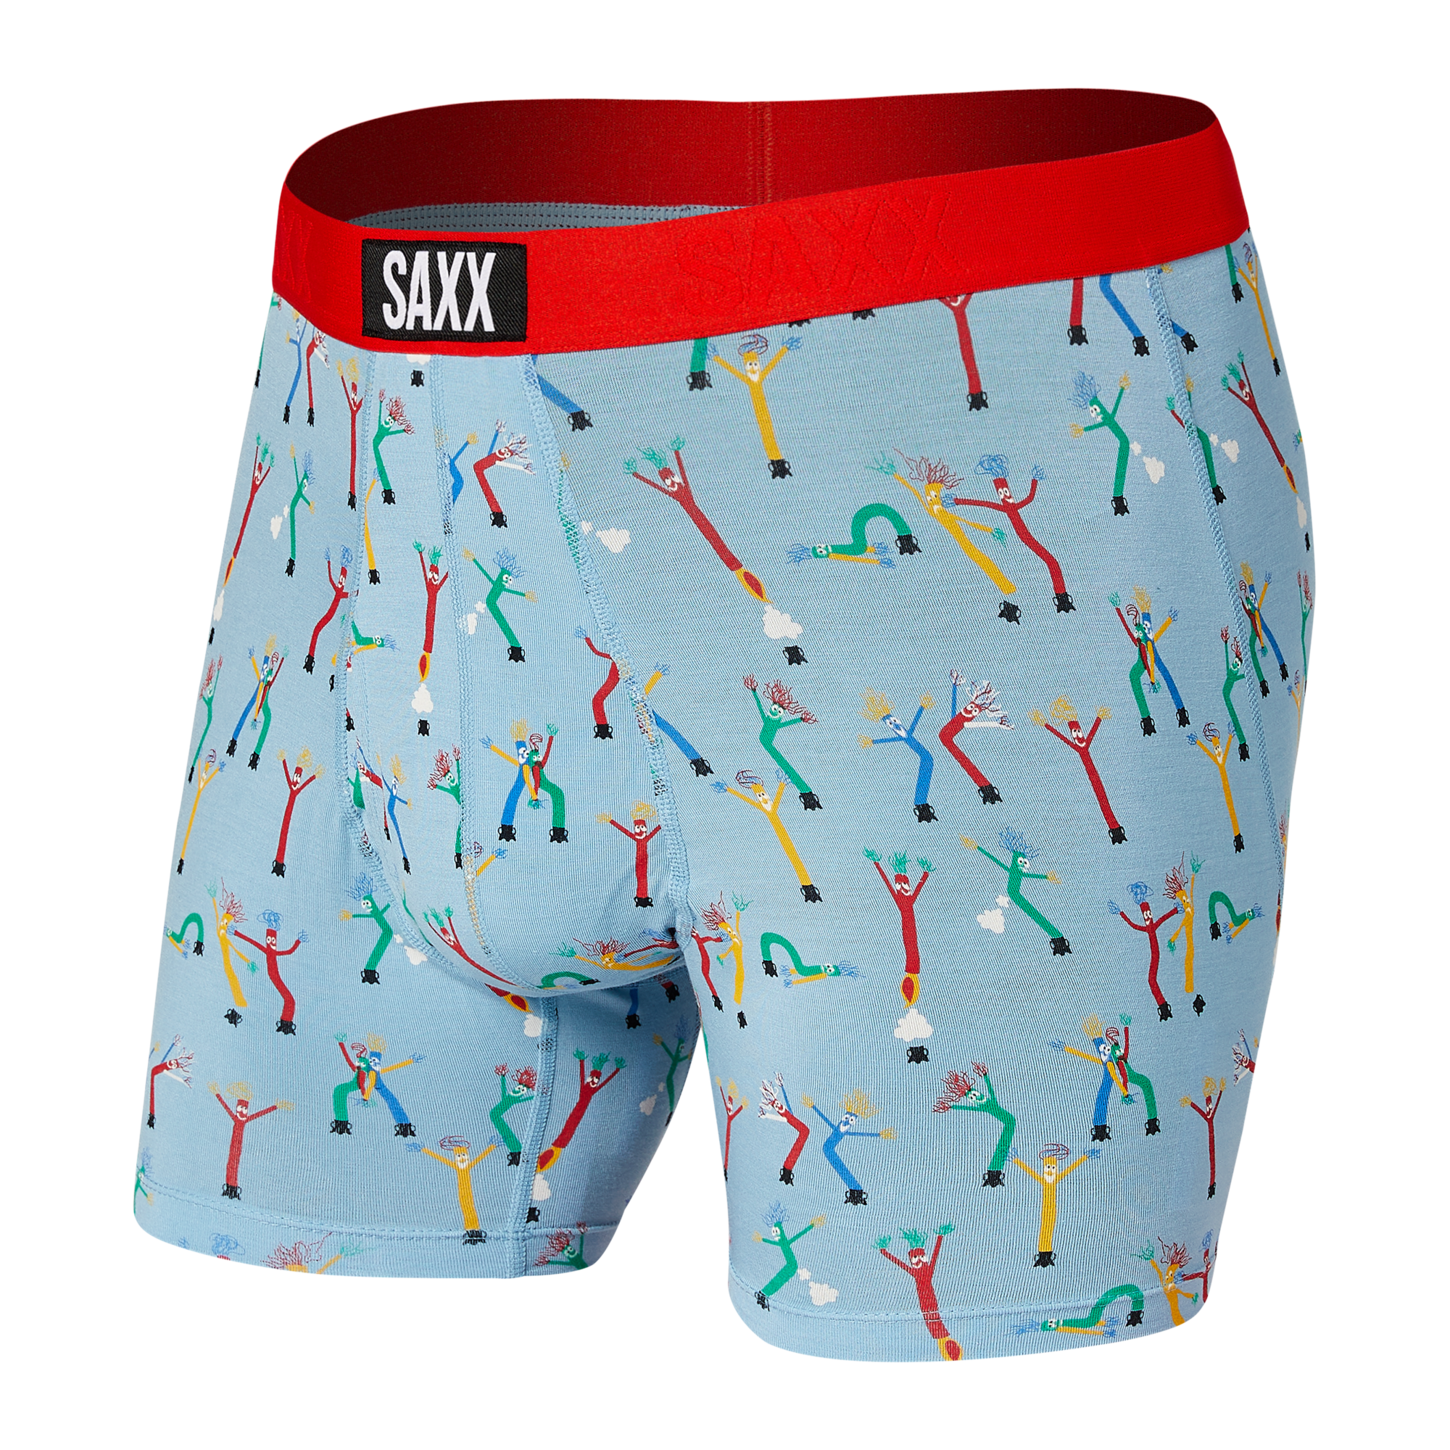 SAXX Underwear Co. Men's Underwear - ULTRA Boxer Briefs with Built